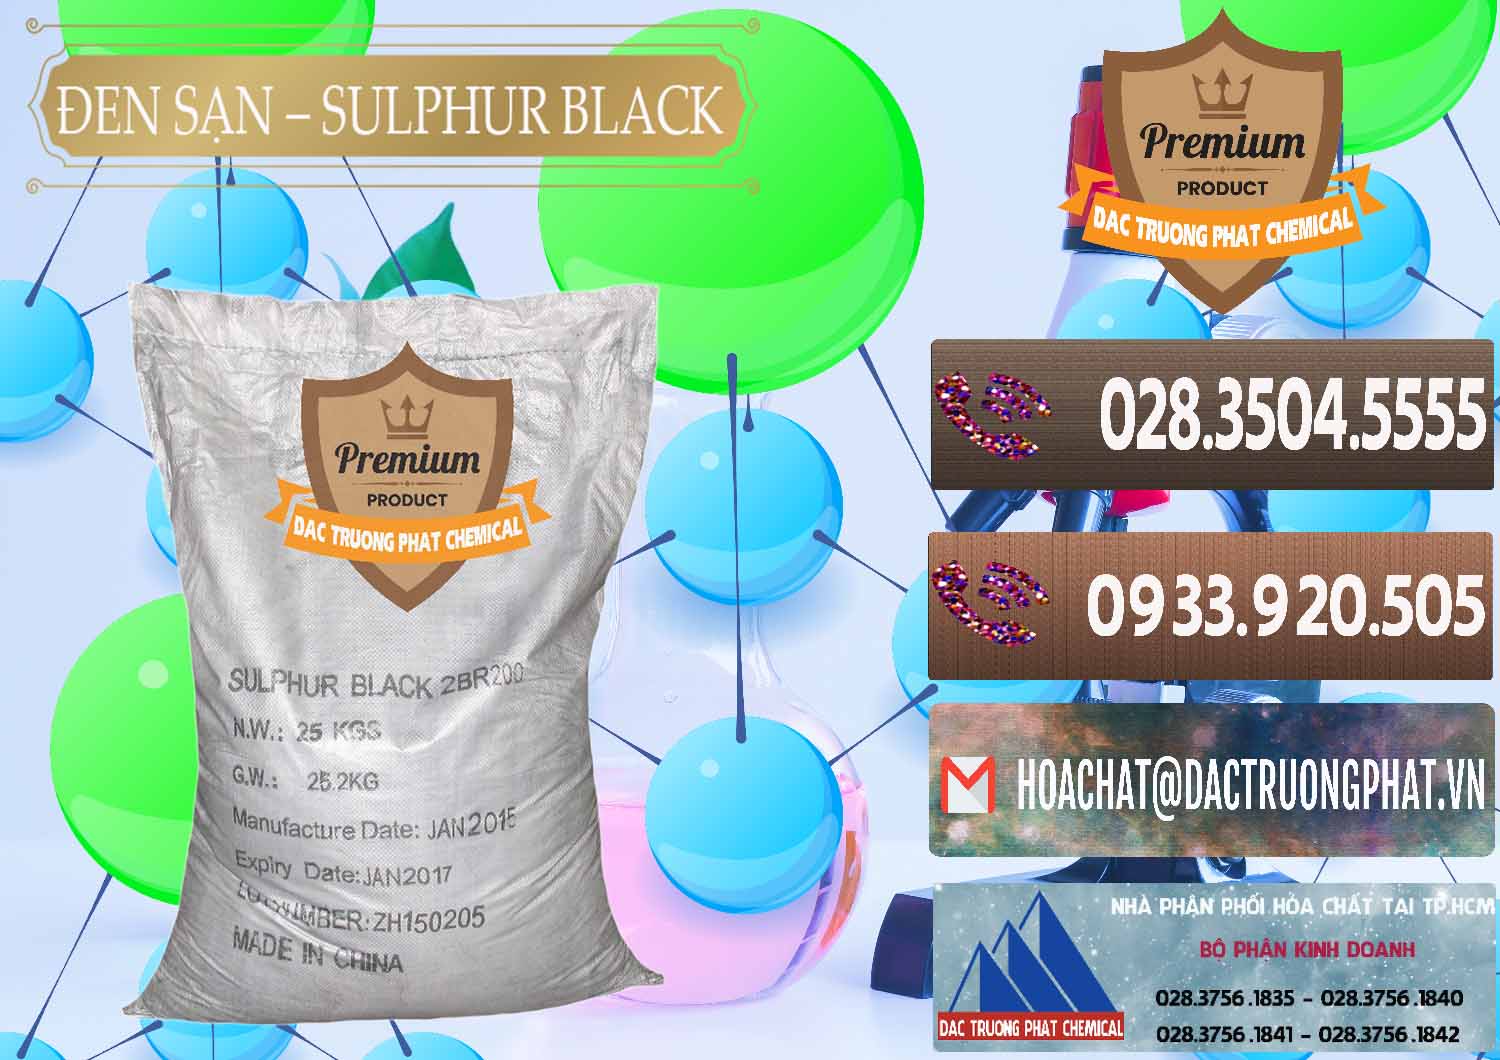 Đơn vị bán và cung cấp Đen Sạn – Sulphur Black Trung Quốc China - 0062 - Chuyên cung cấp và phân phối hóa chất tại TP.HCM - hoachatviet.net